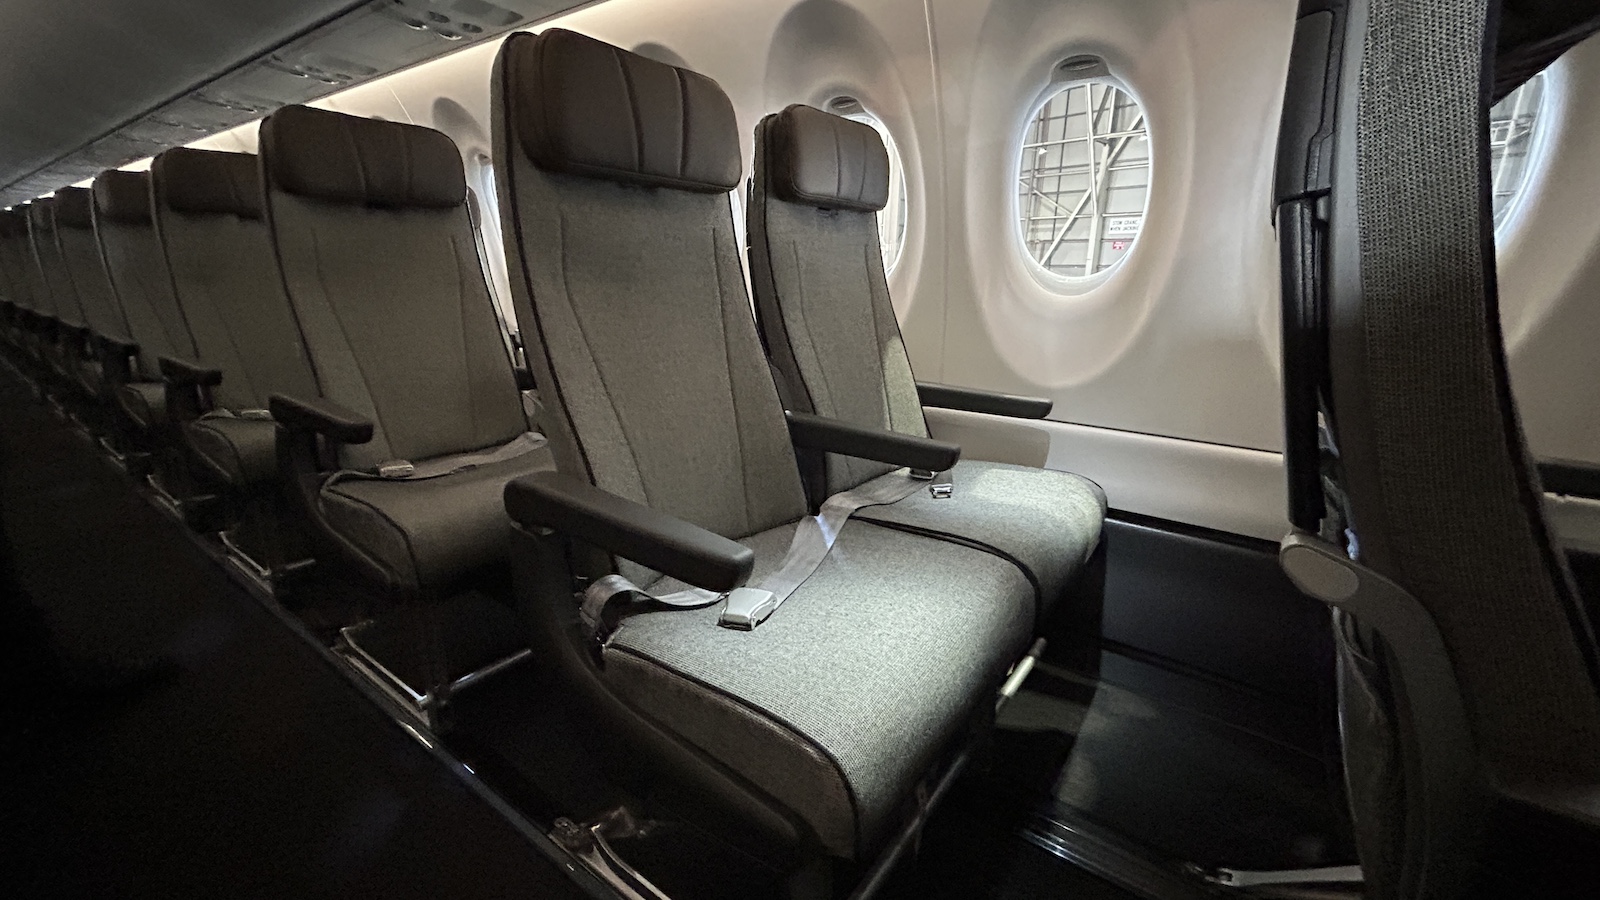 Qantaslink A220 Economy Class Seats 2 Row Point Hacks by Daniel Sciberras